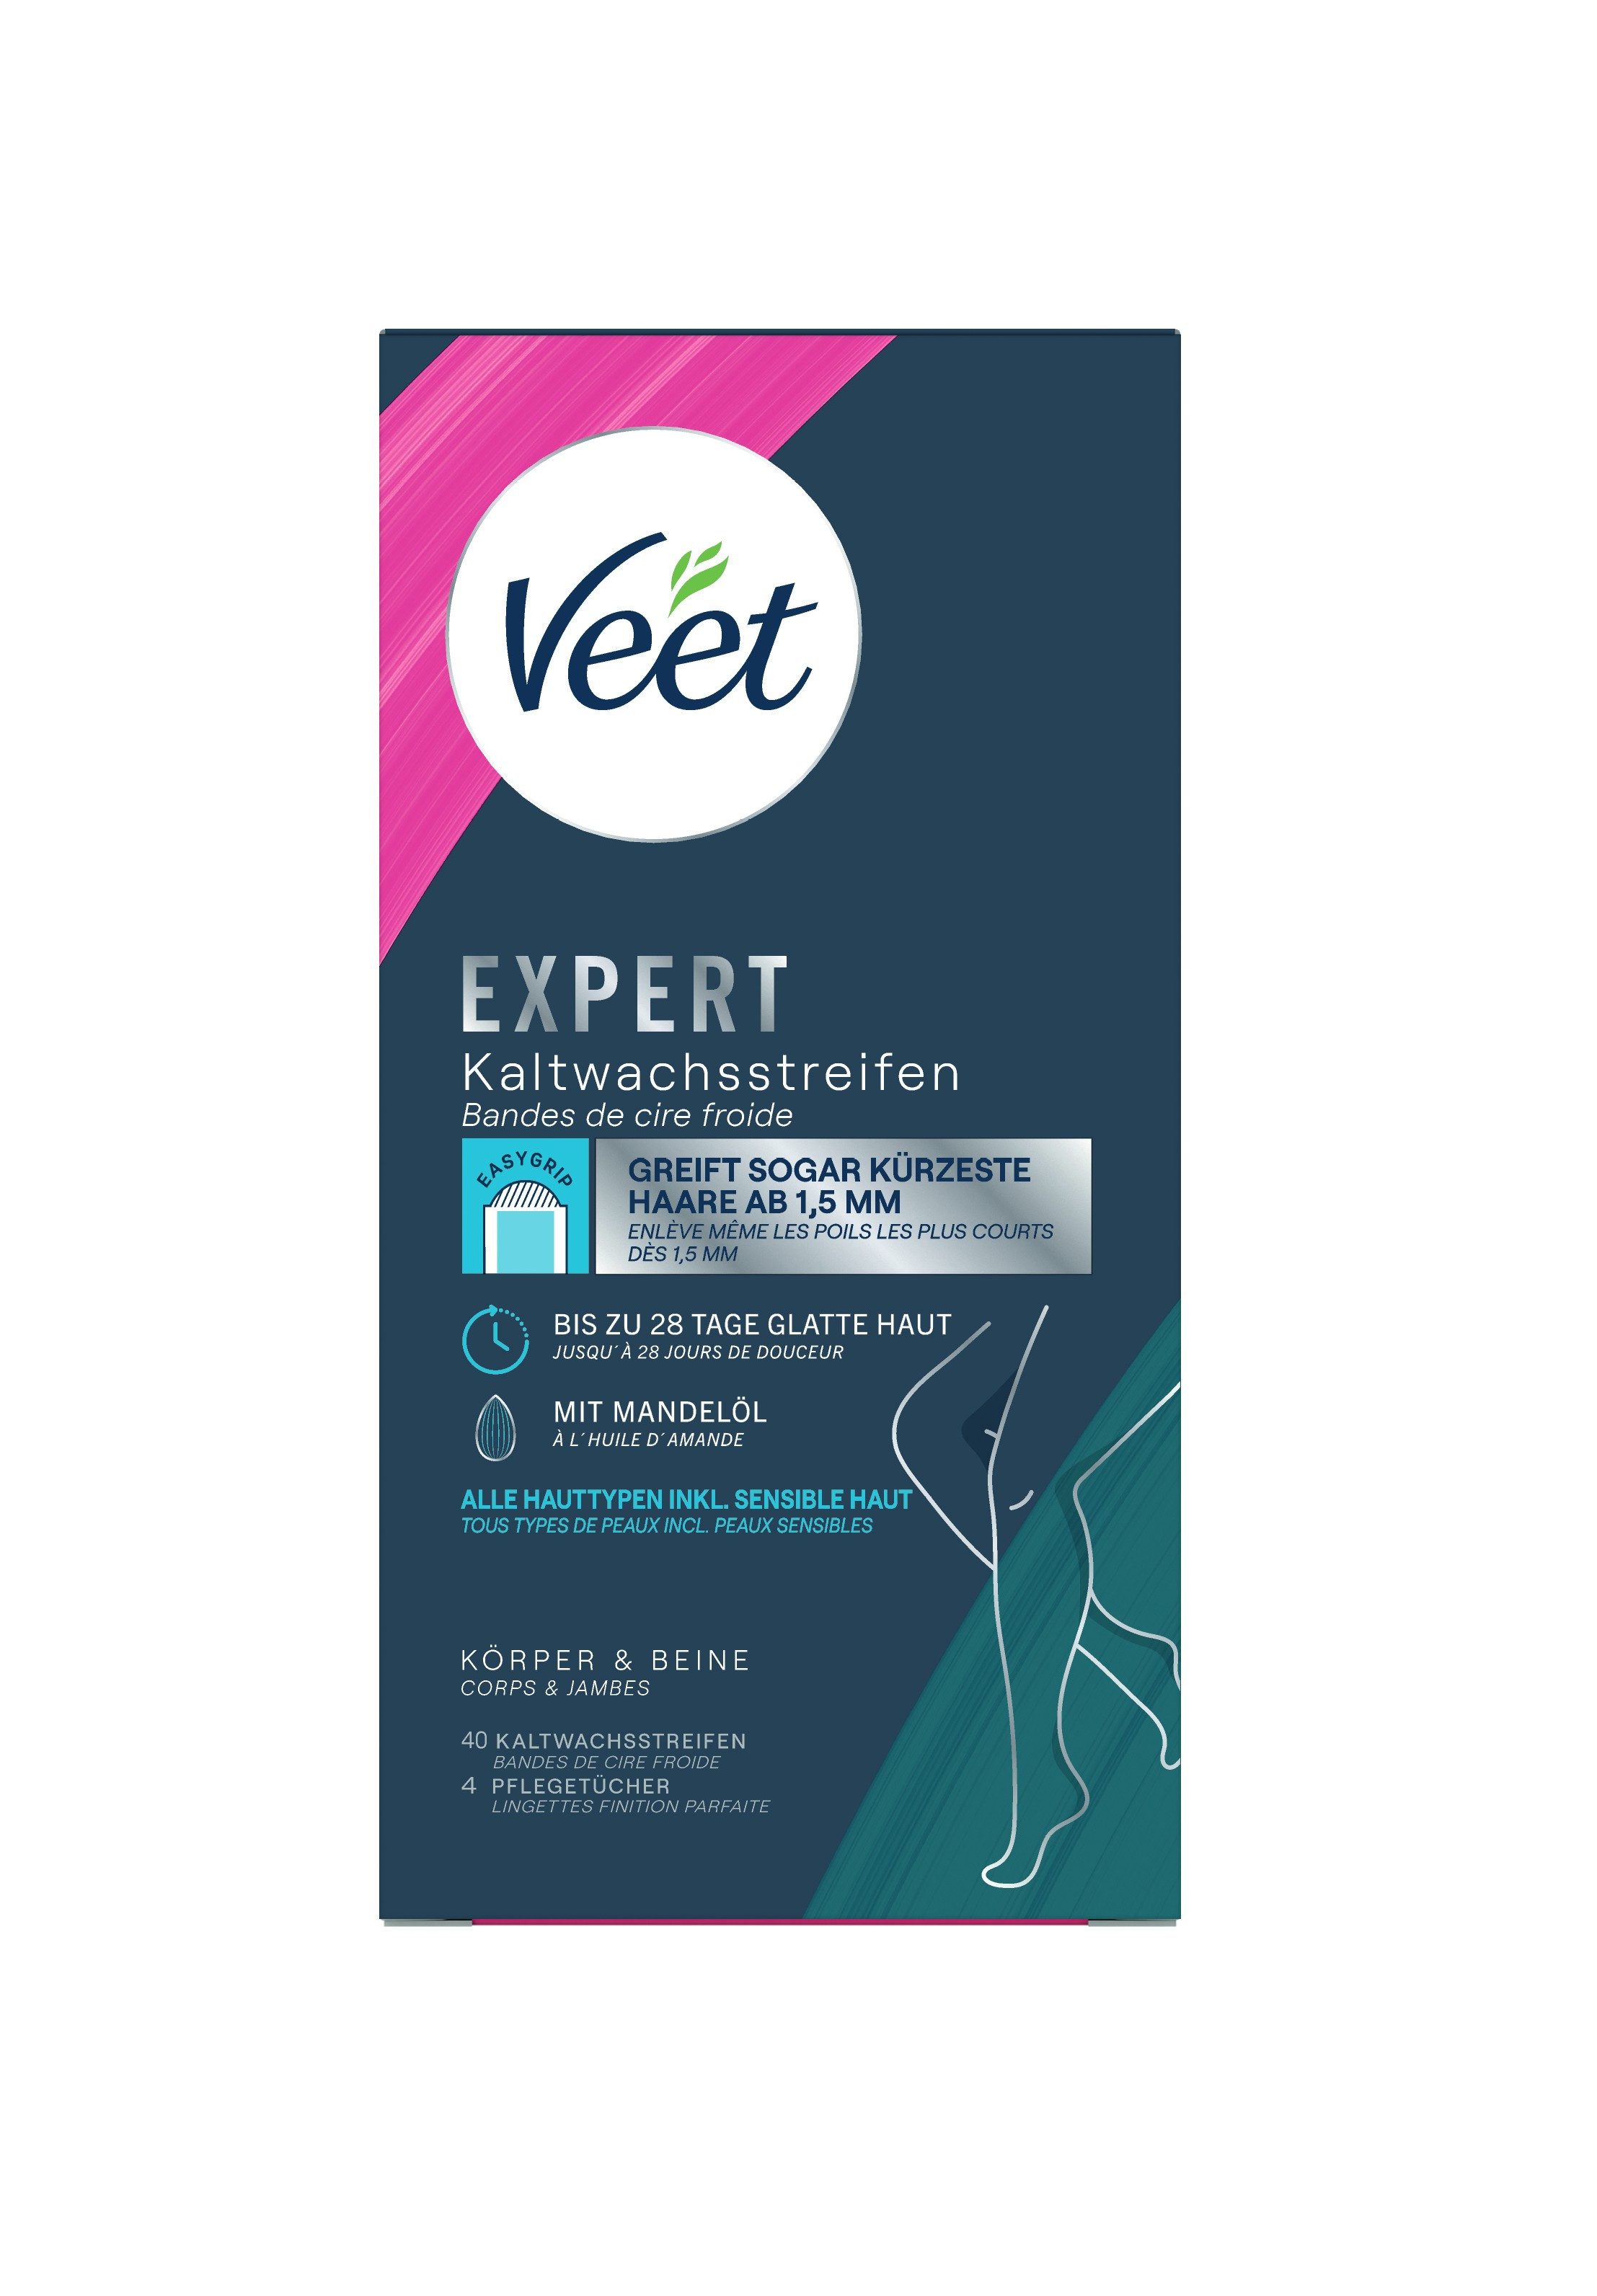 Veet Kaltwachsstreifen EXPERT, 40 St., für Körper & Beine, - zur Haarentfernung für alle Hauttypen inkl. sensibler Haut